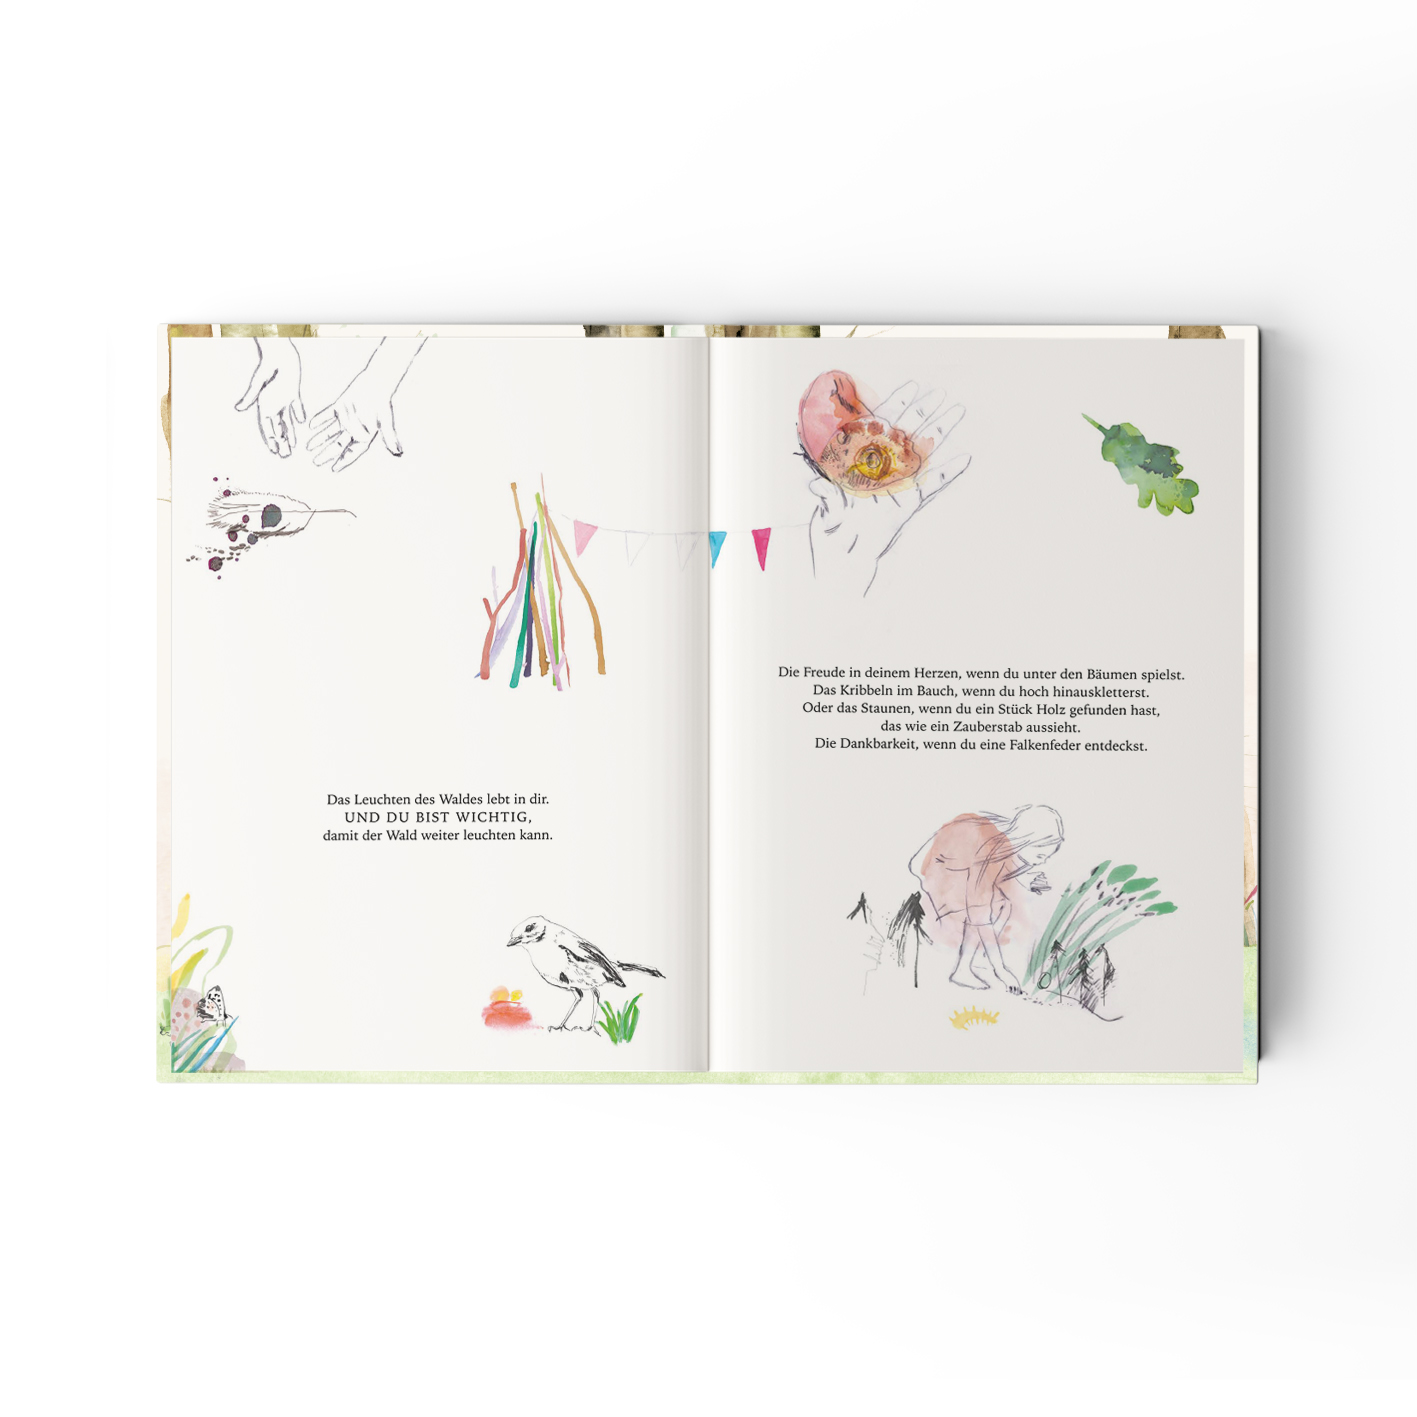 Jupitermond Verlag Kinderbuch 'Das Leuchten des Waldes'